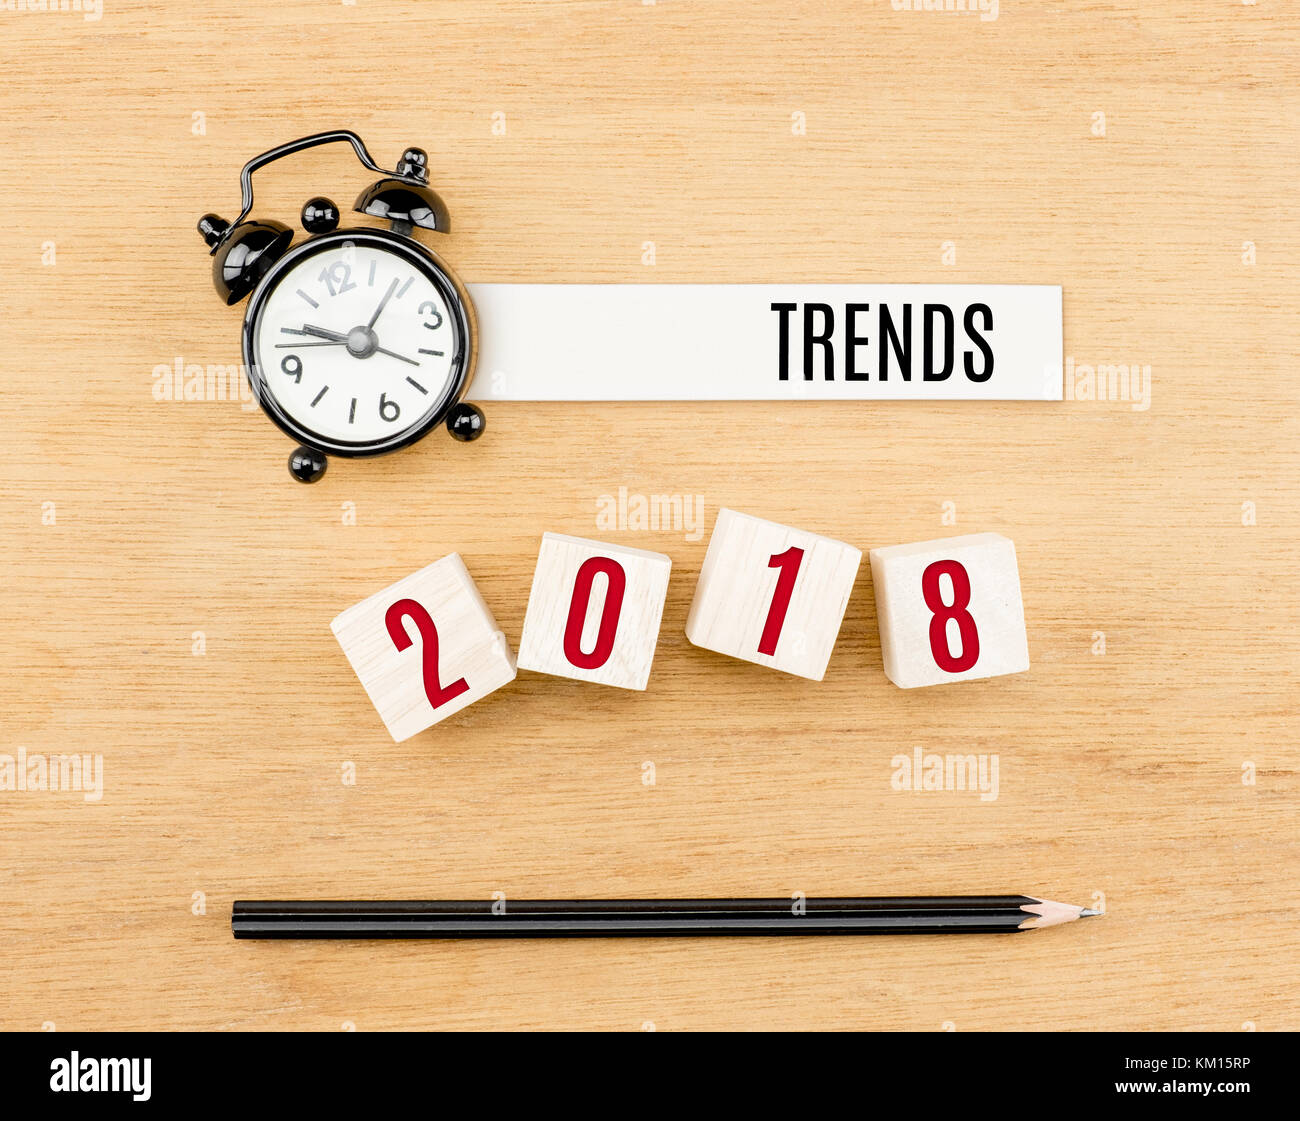 Vista superior de las tendencias 2018 con reloj y cubo en tabla de madera Foto de stock